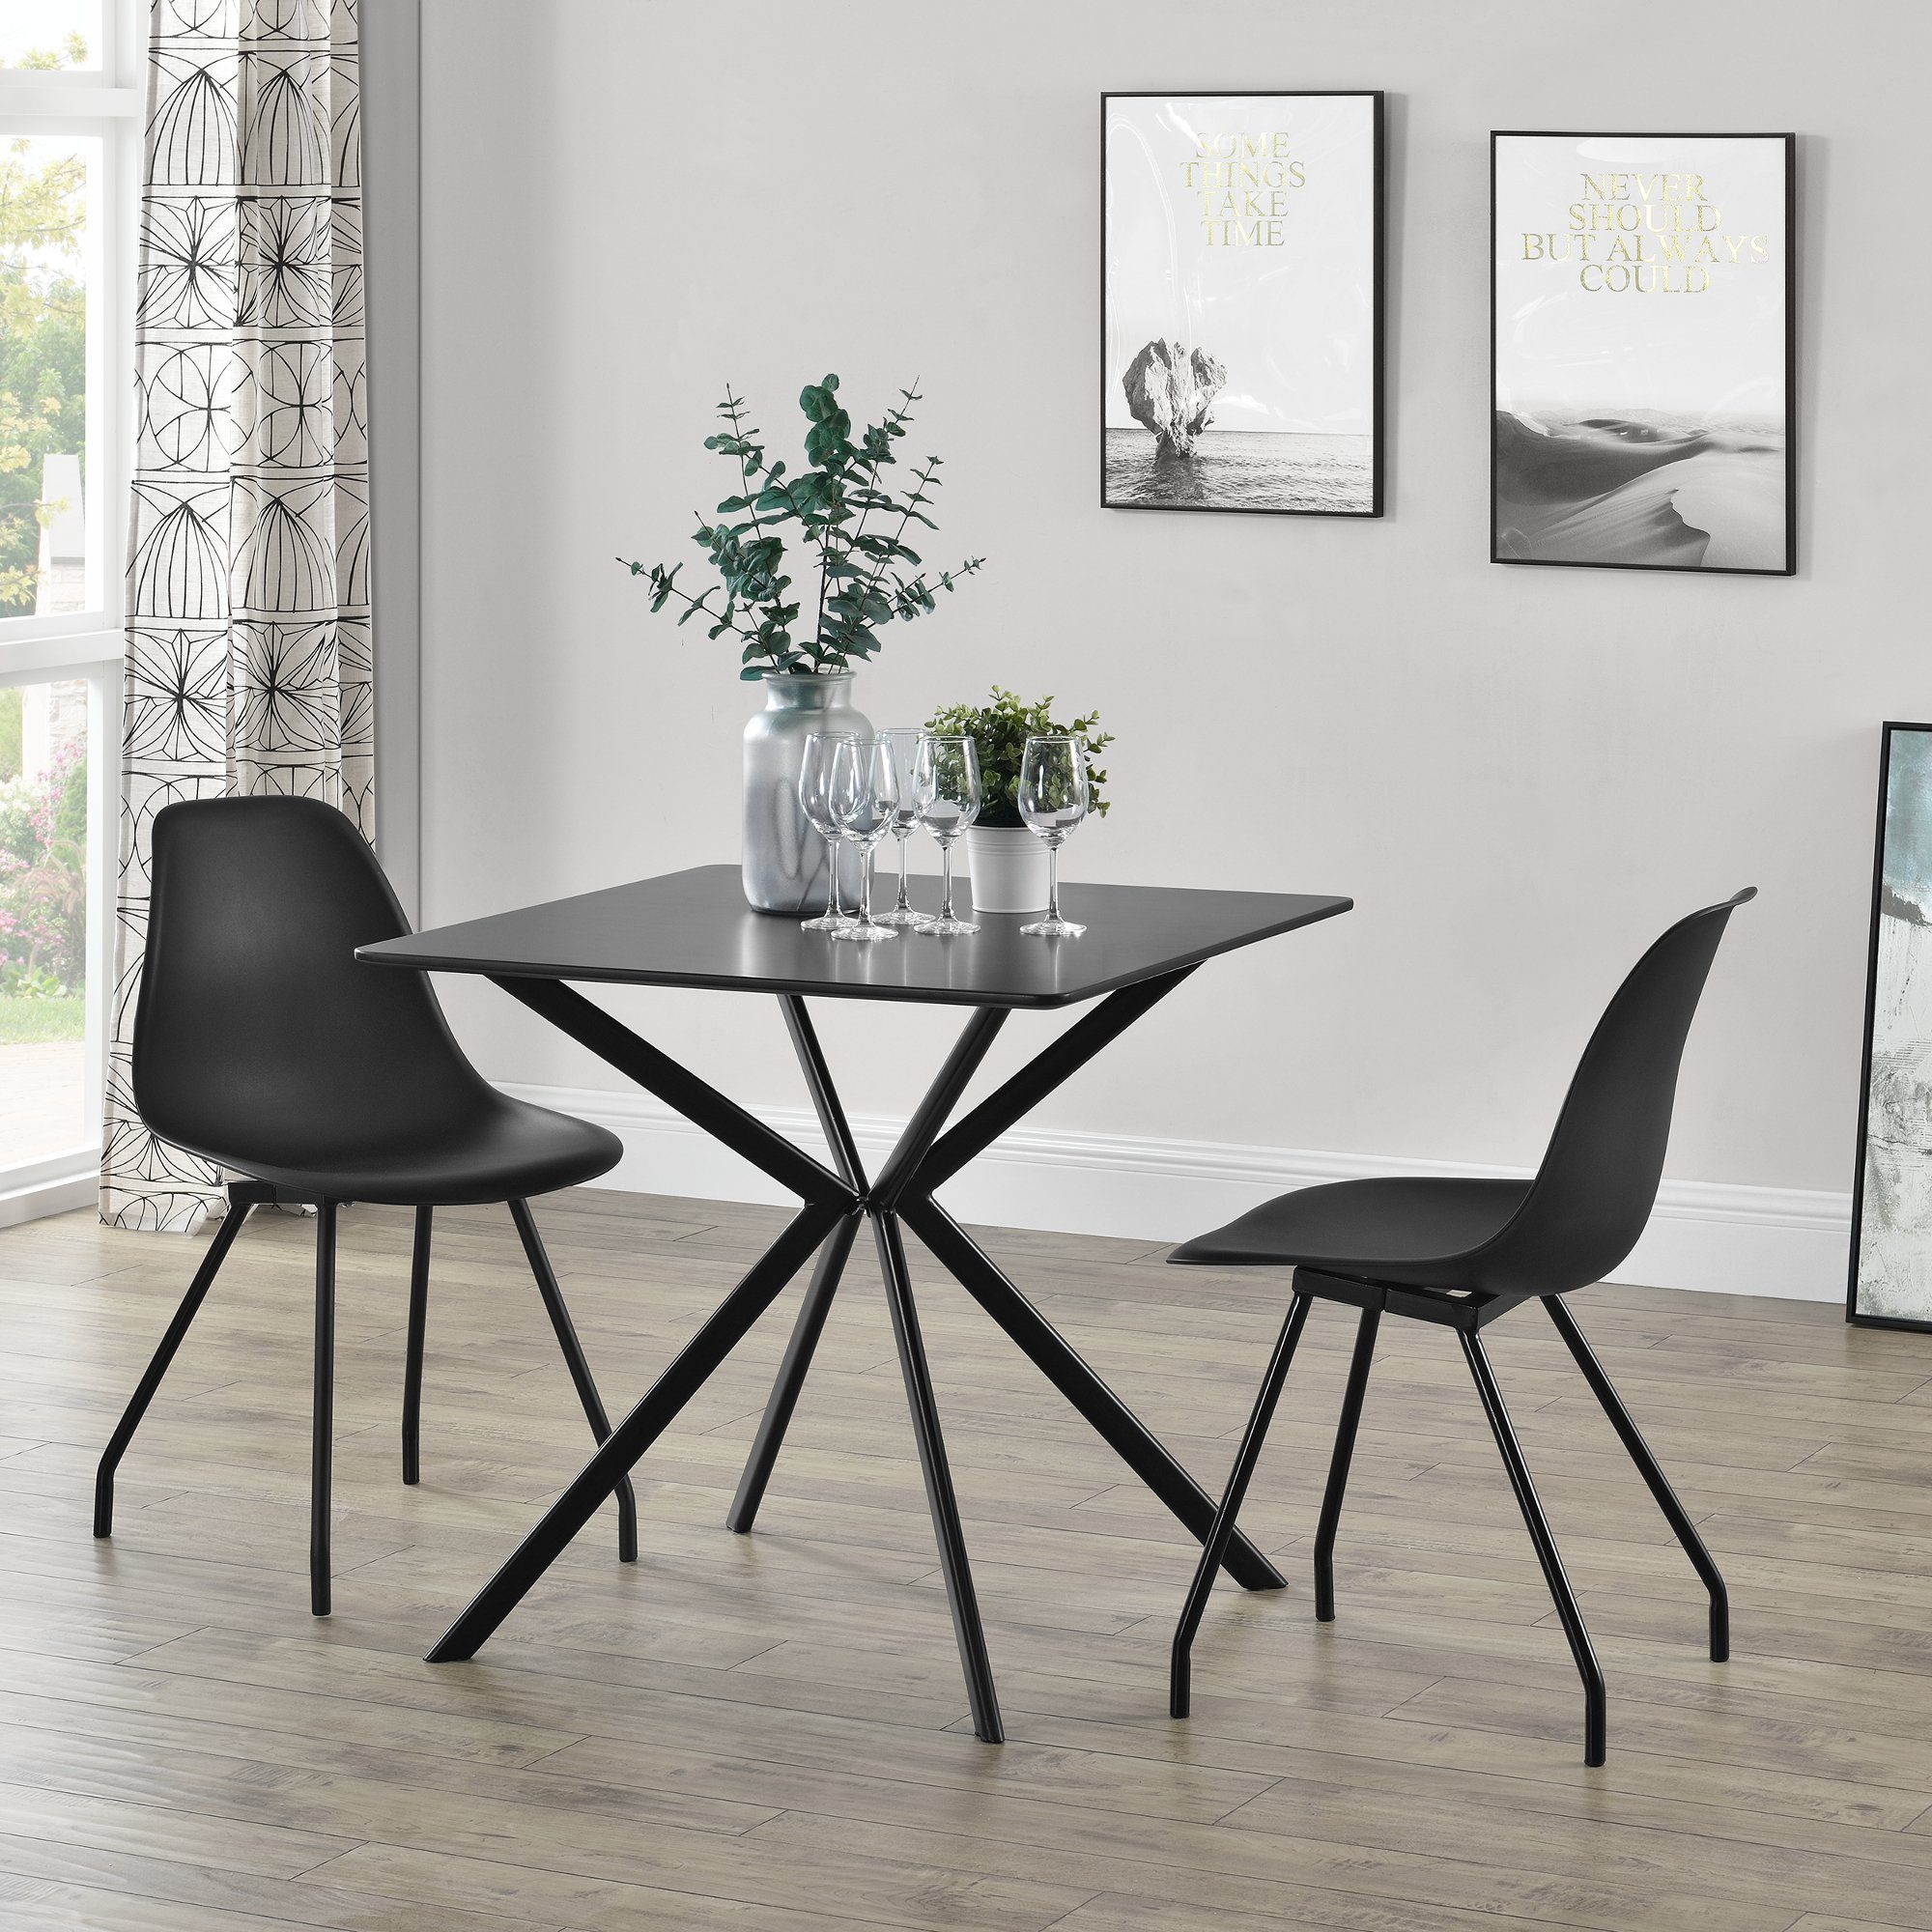 en.casa ® Esstisch mit 4 Stühlen weiß 120x60cm Küchentisch Esszimmertisch Tisch 